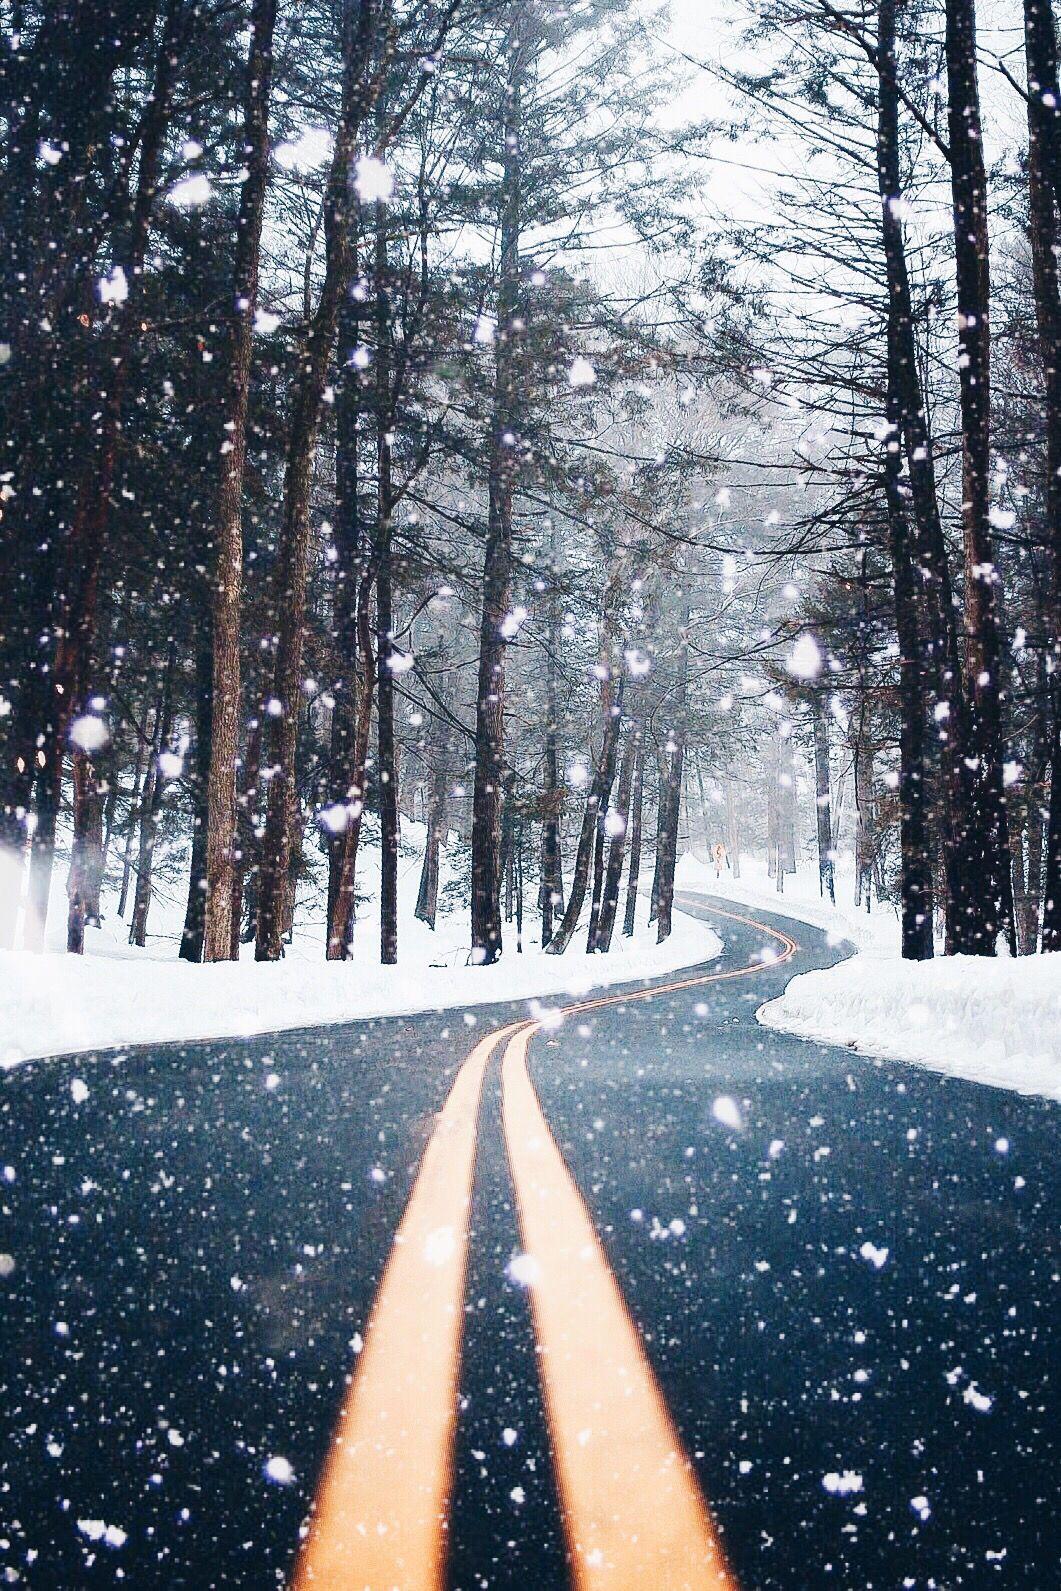 imthejam. vsco. Winter photography, Snow, Winter scenes